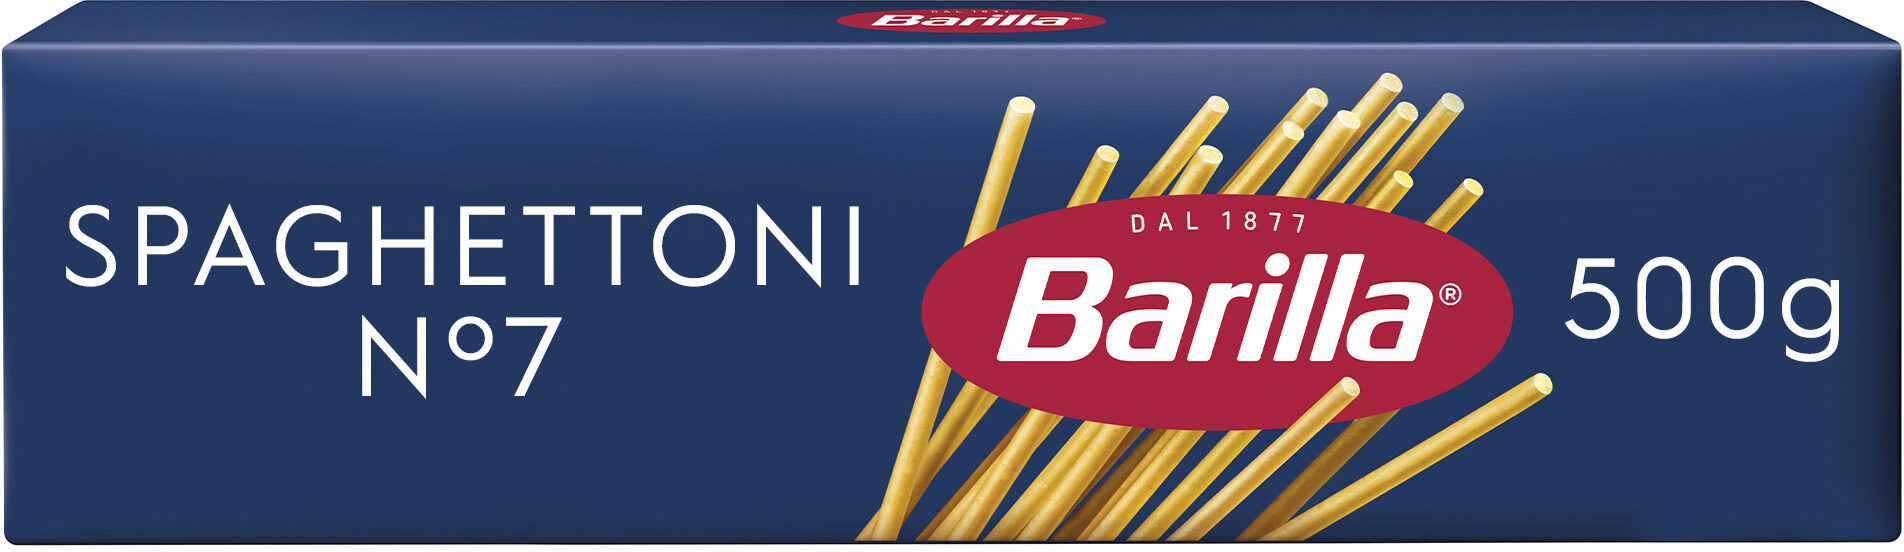 Barilla pates spaghettoni n°7 500g - Produit - fr